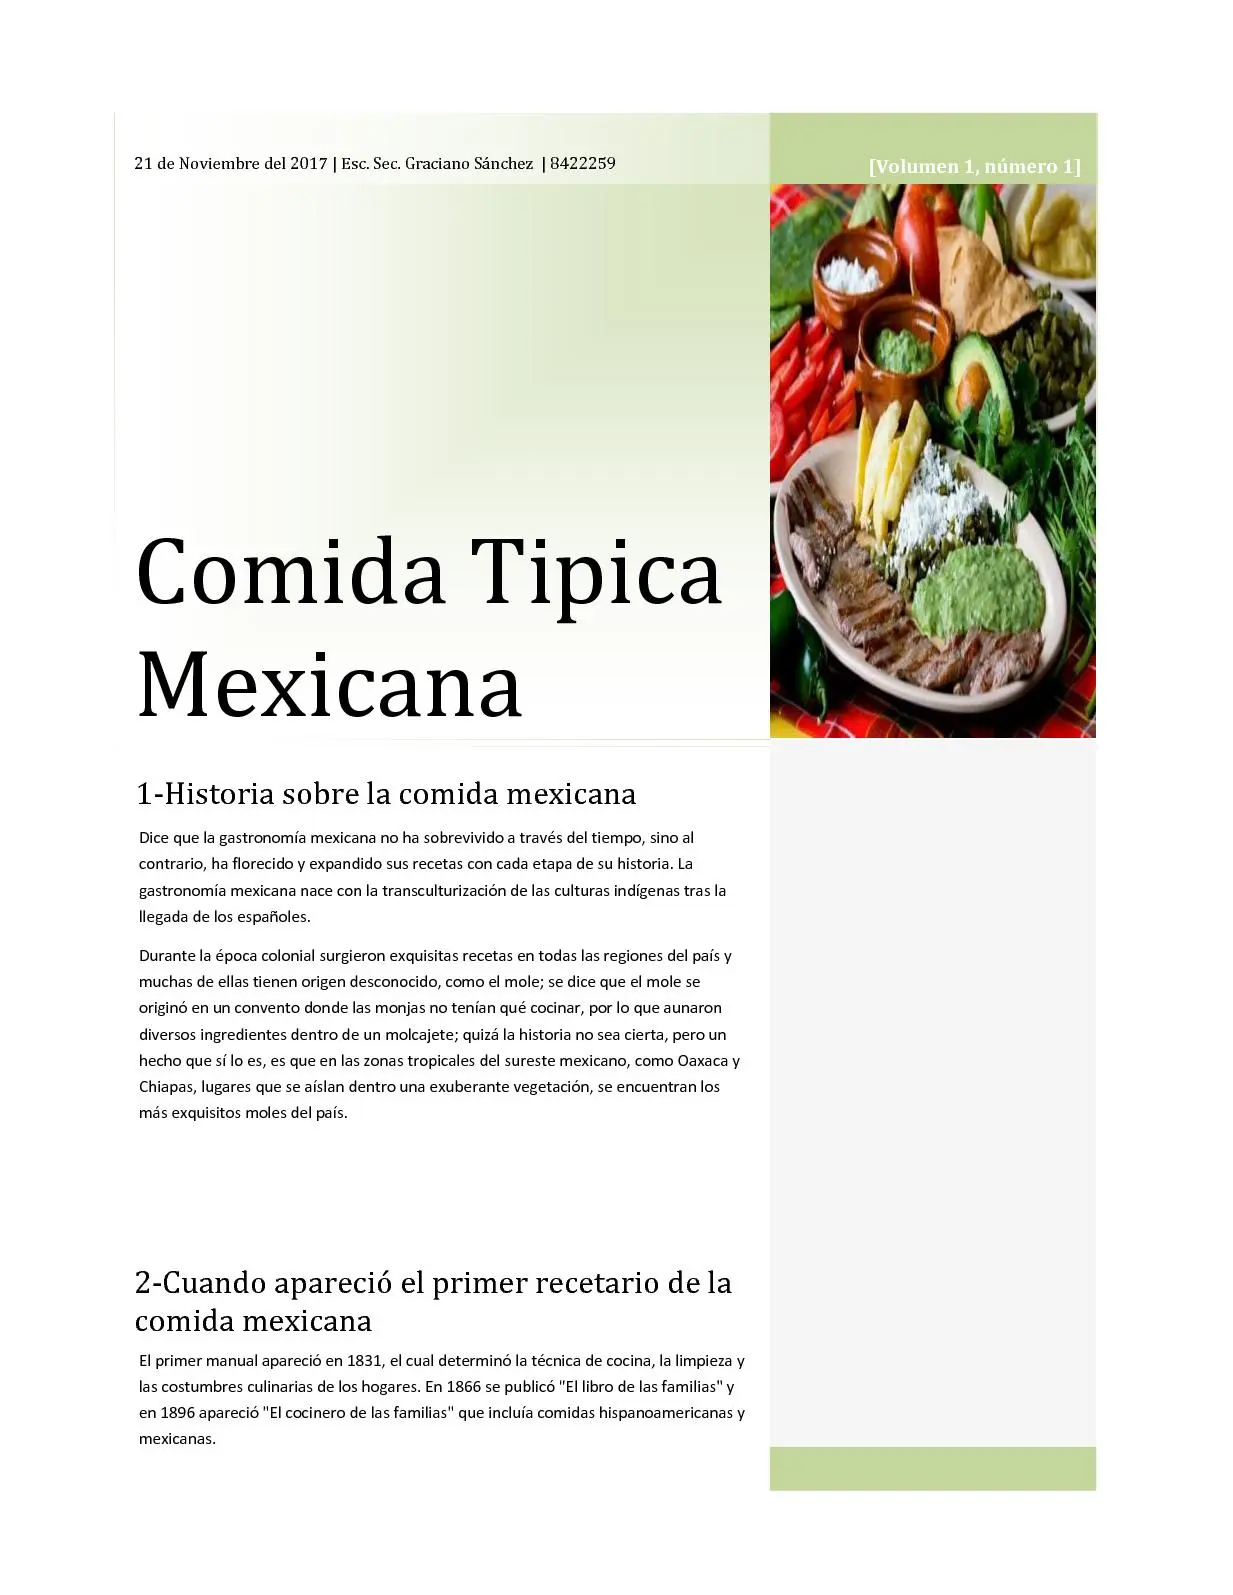 comida mexicana resumen - Qué es la comida mexicana